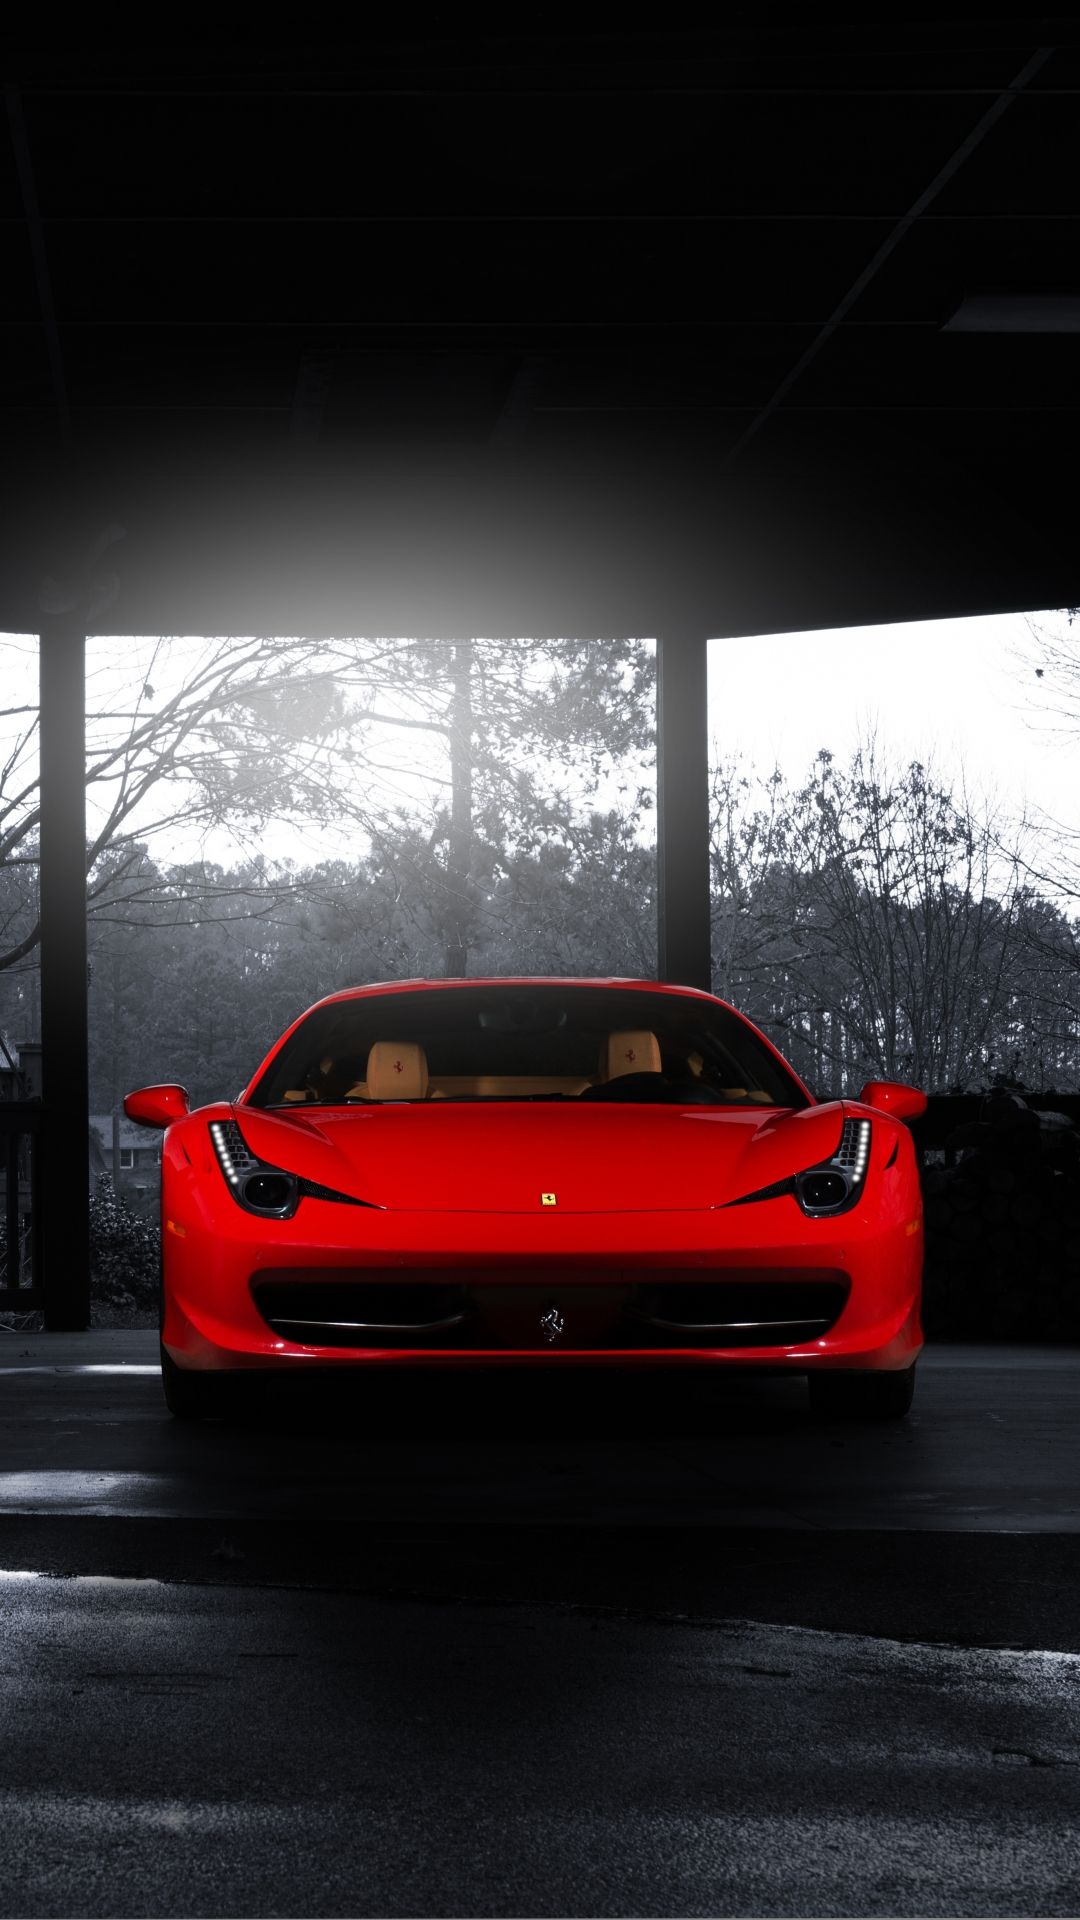 Ferrari iPhone Wallpaper. Ferrari, Ferrari car, Sports cars luxury